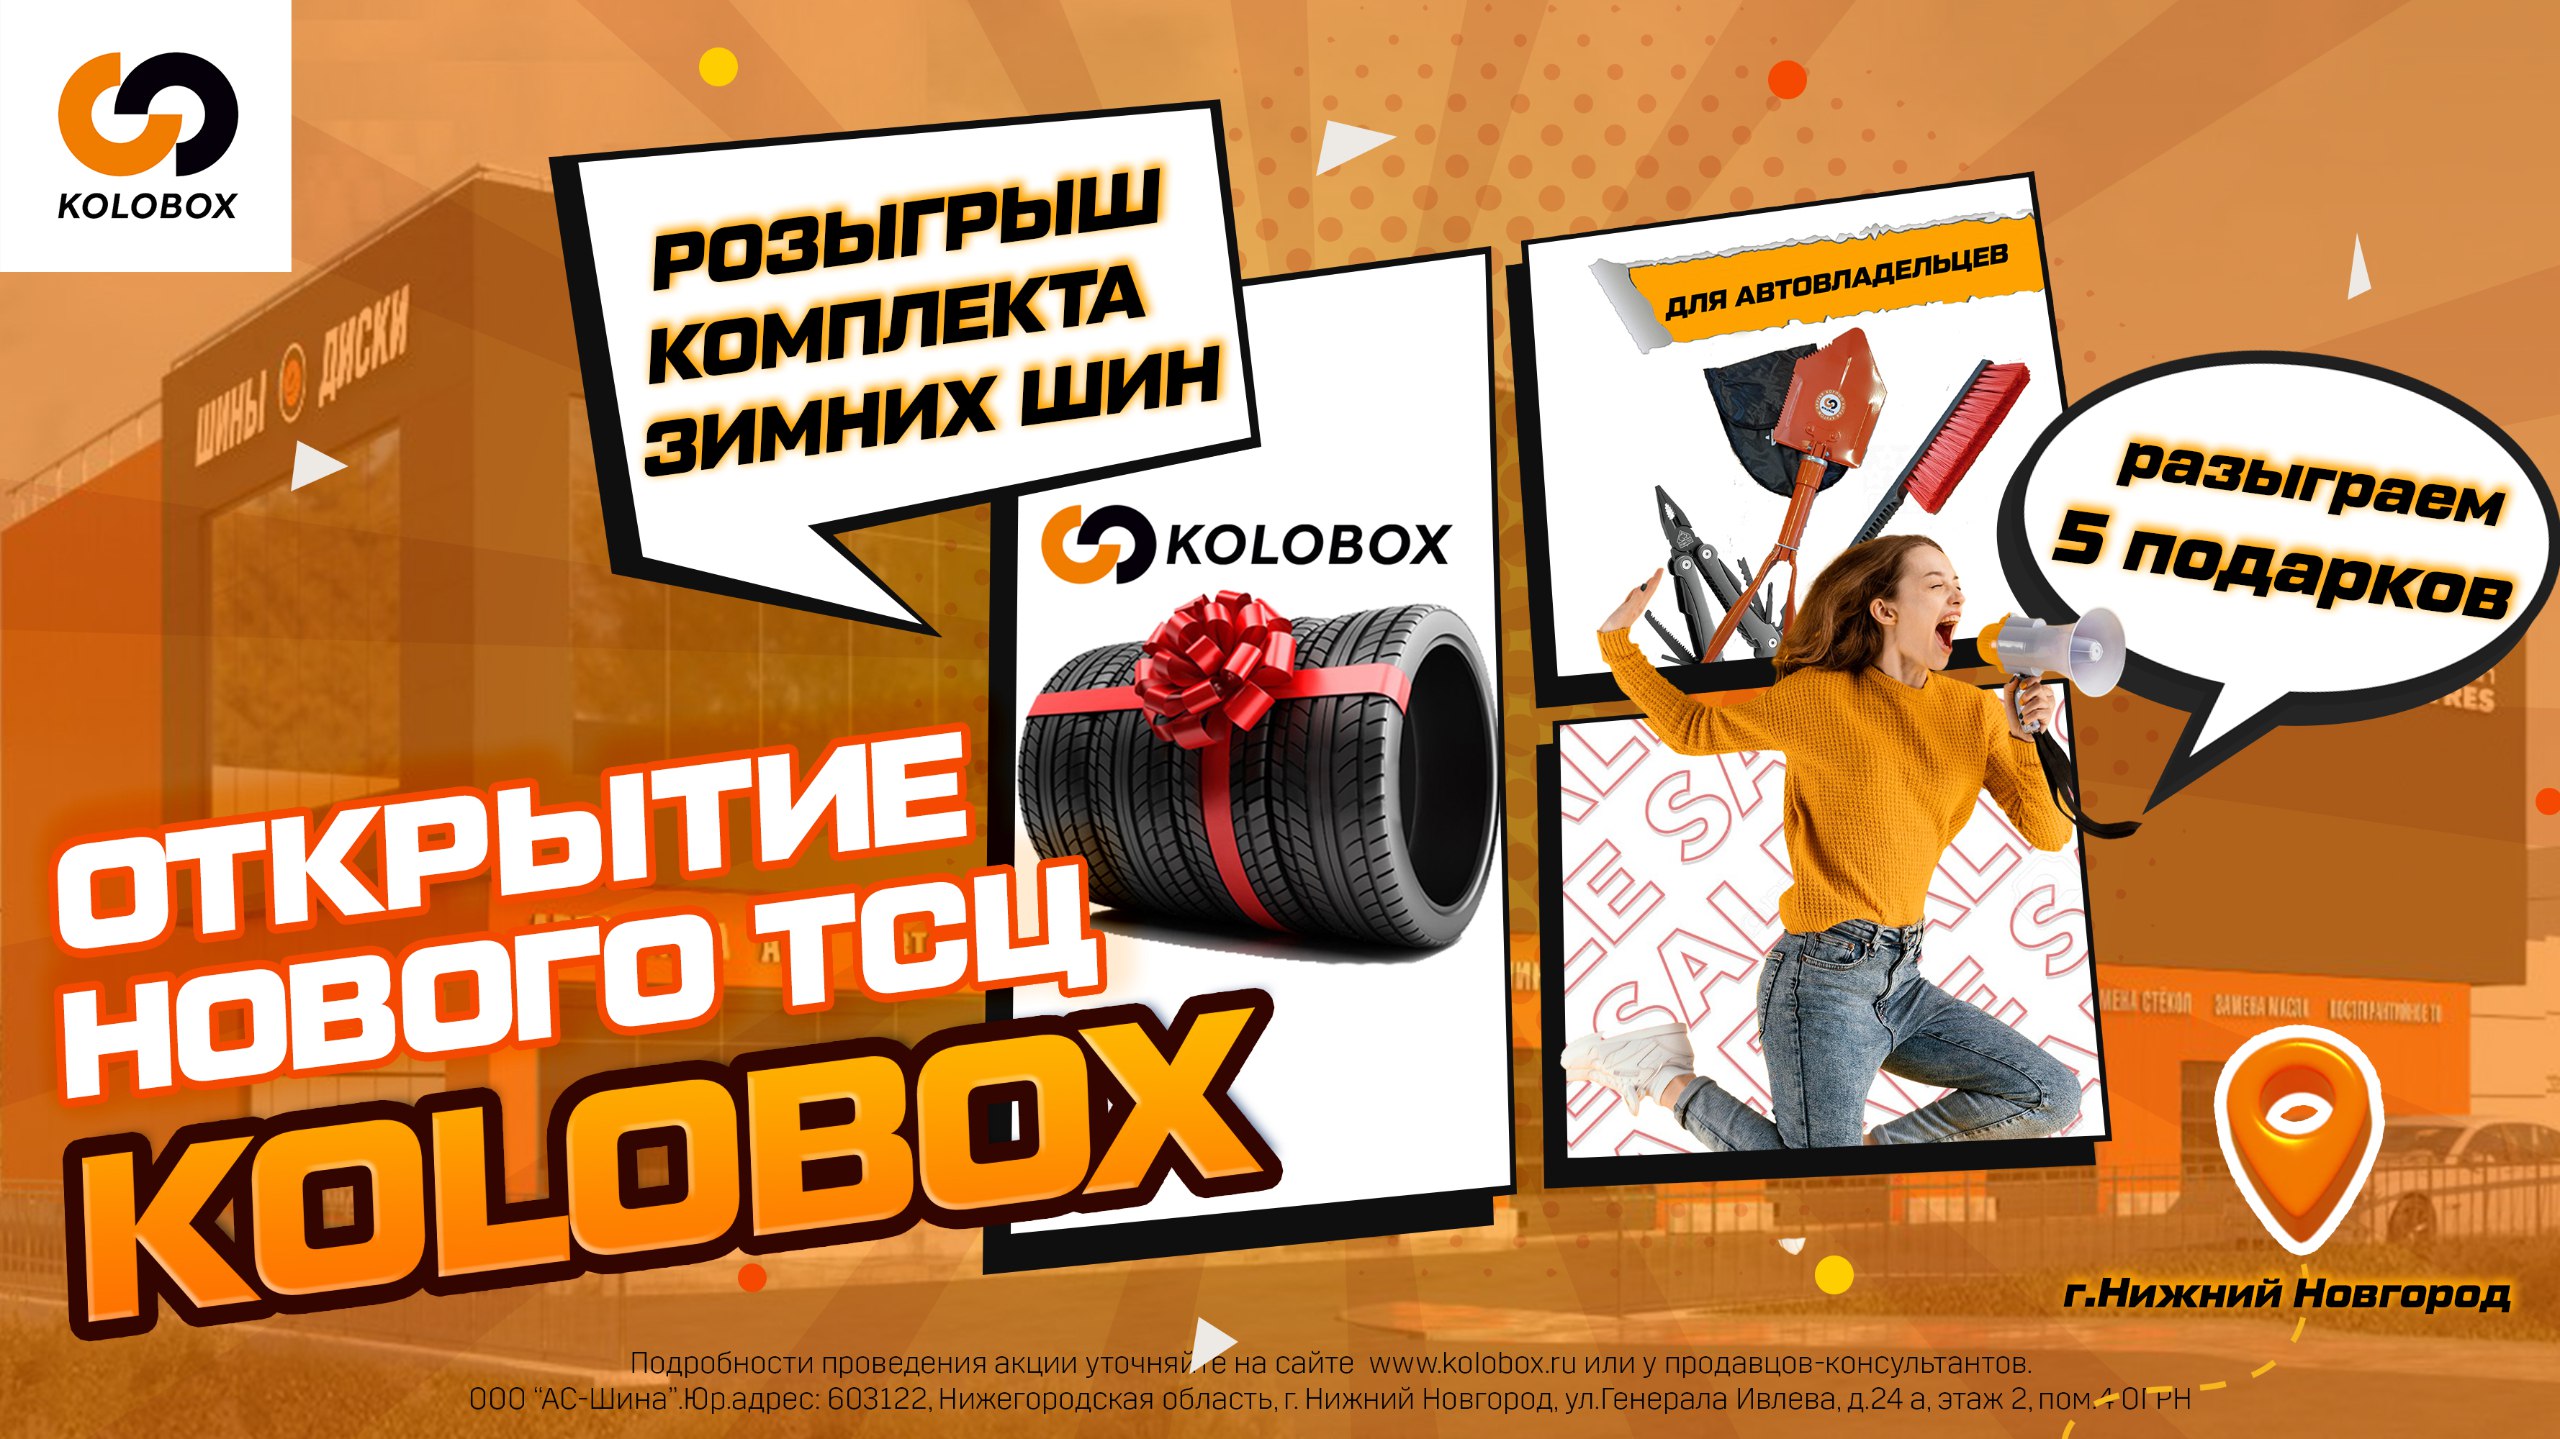 Kolobox дарит подарки в честь открытия нового ТСЦ в Нижнем Новгороде!